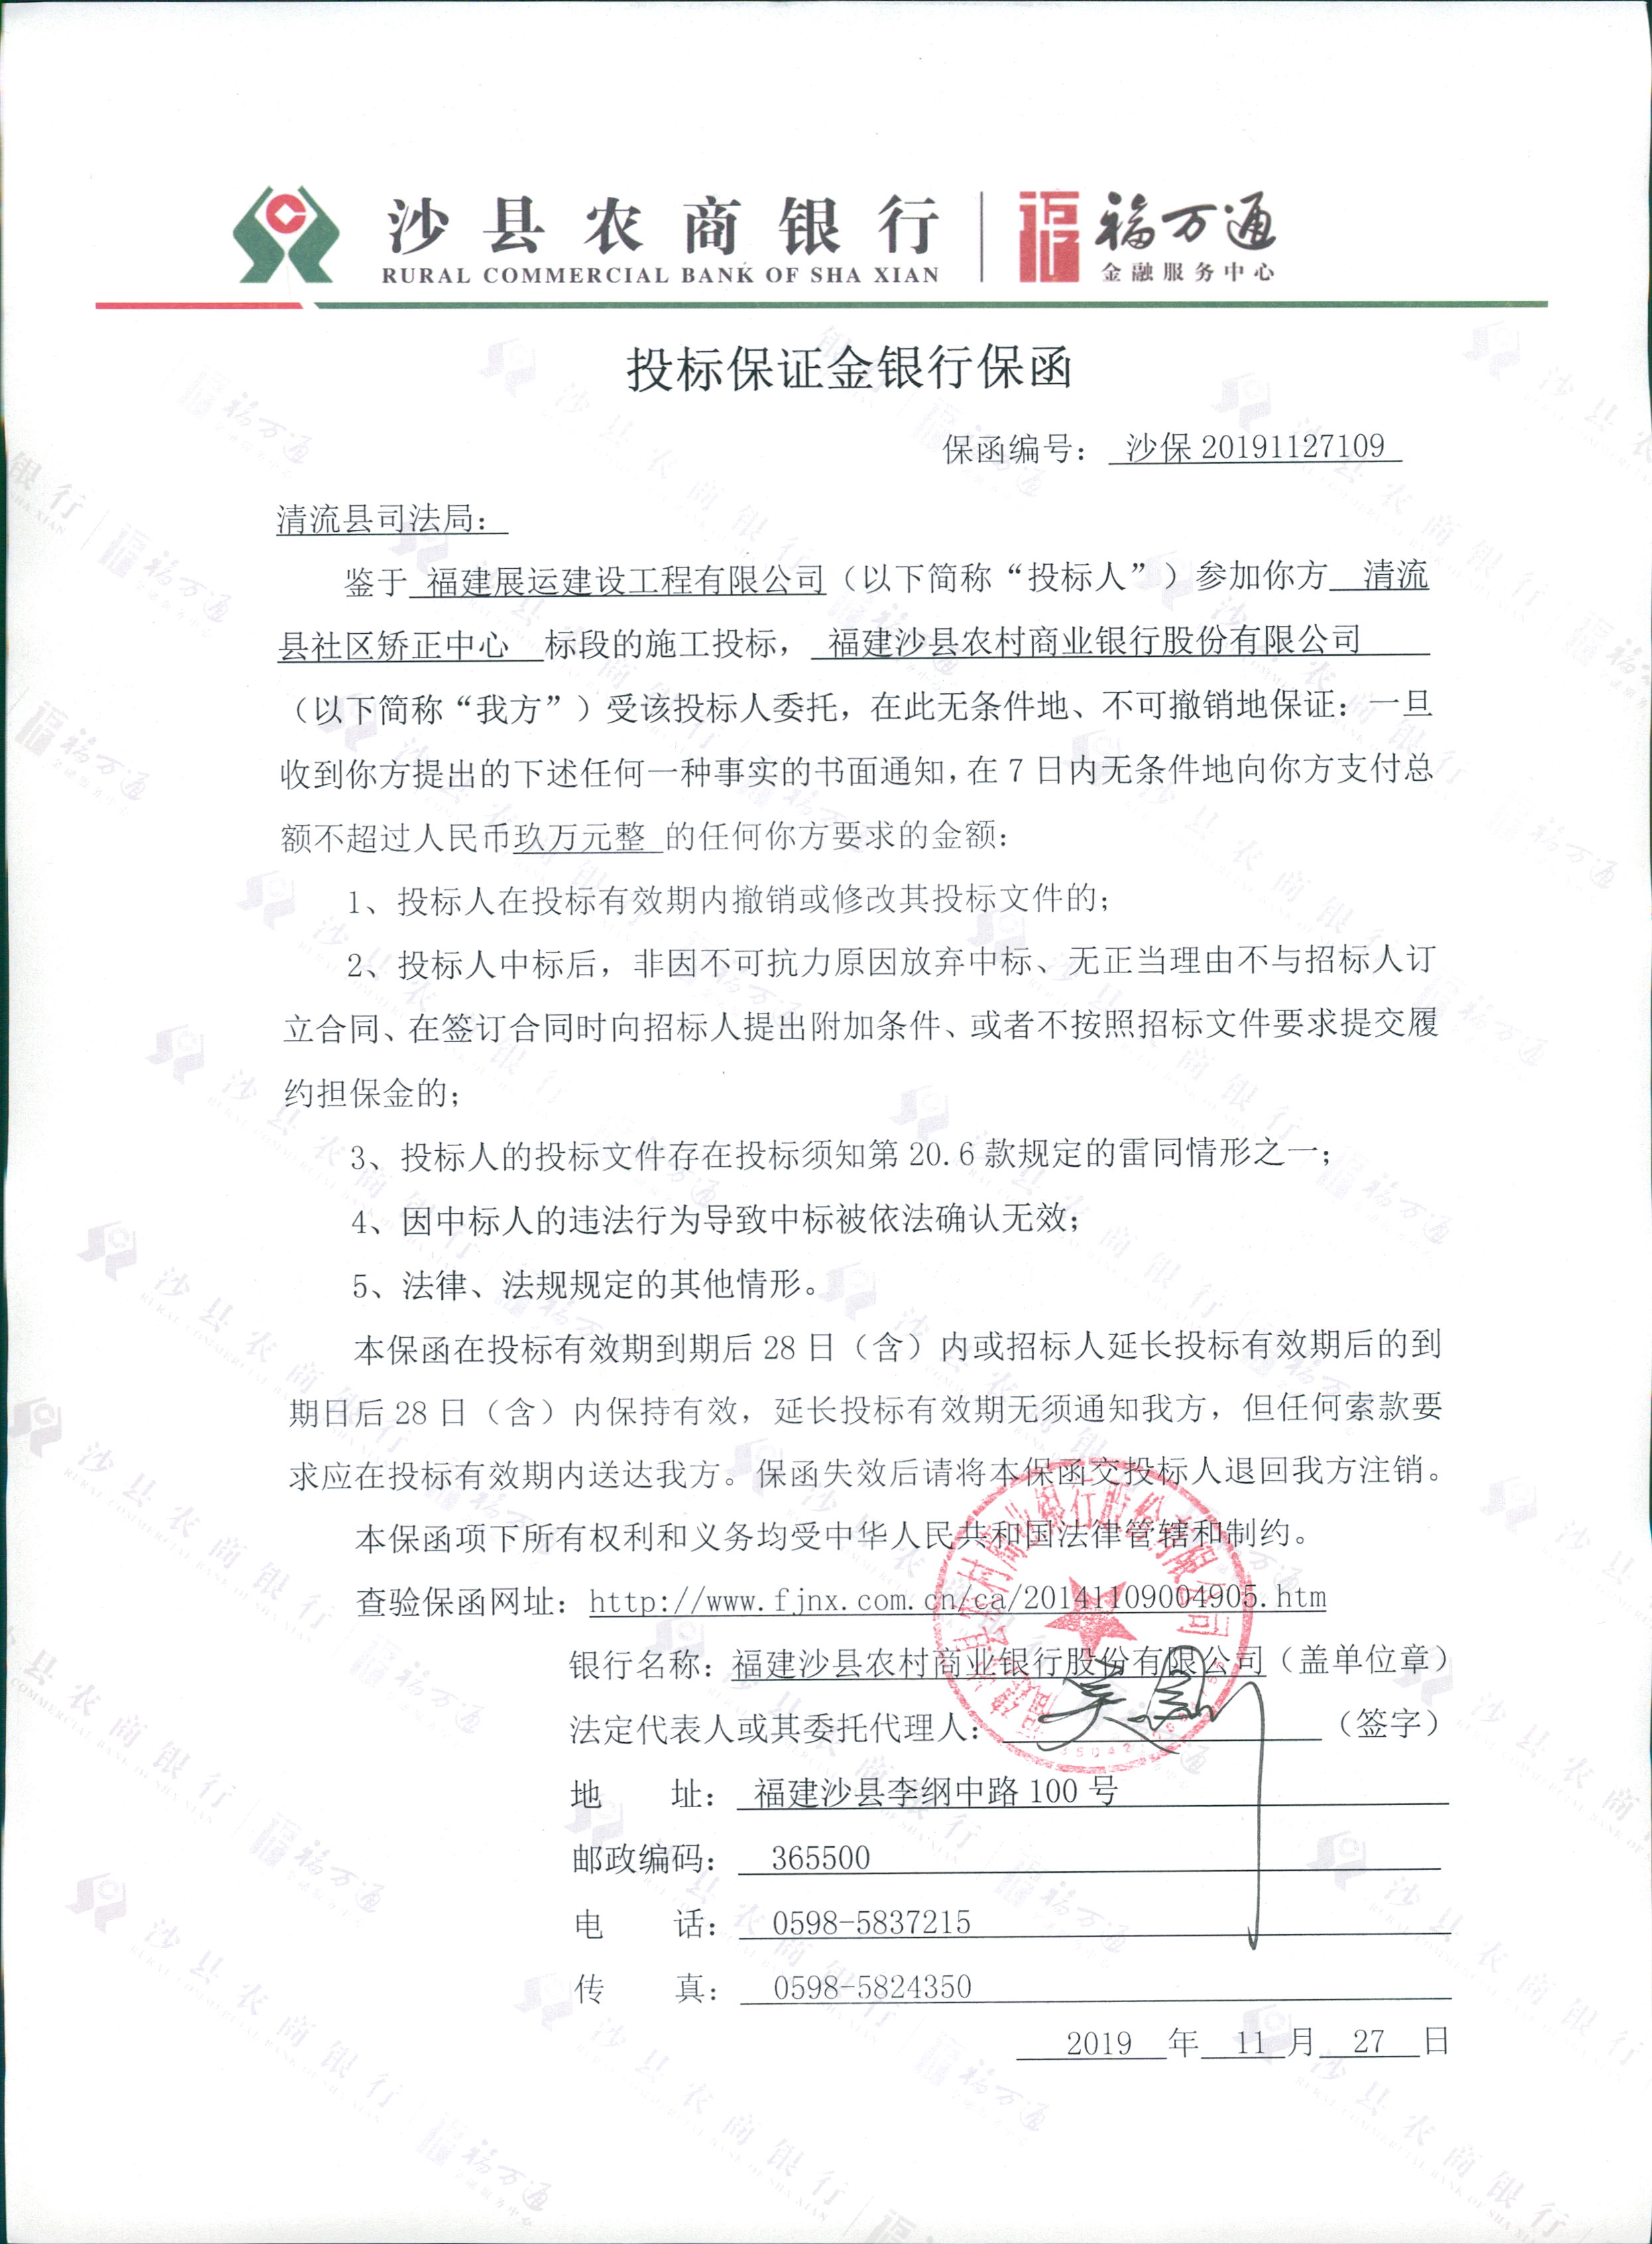 沙县农商银行关于清流县社区矫正中心项目投标保函的公告